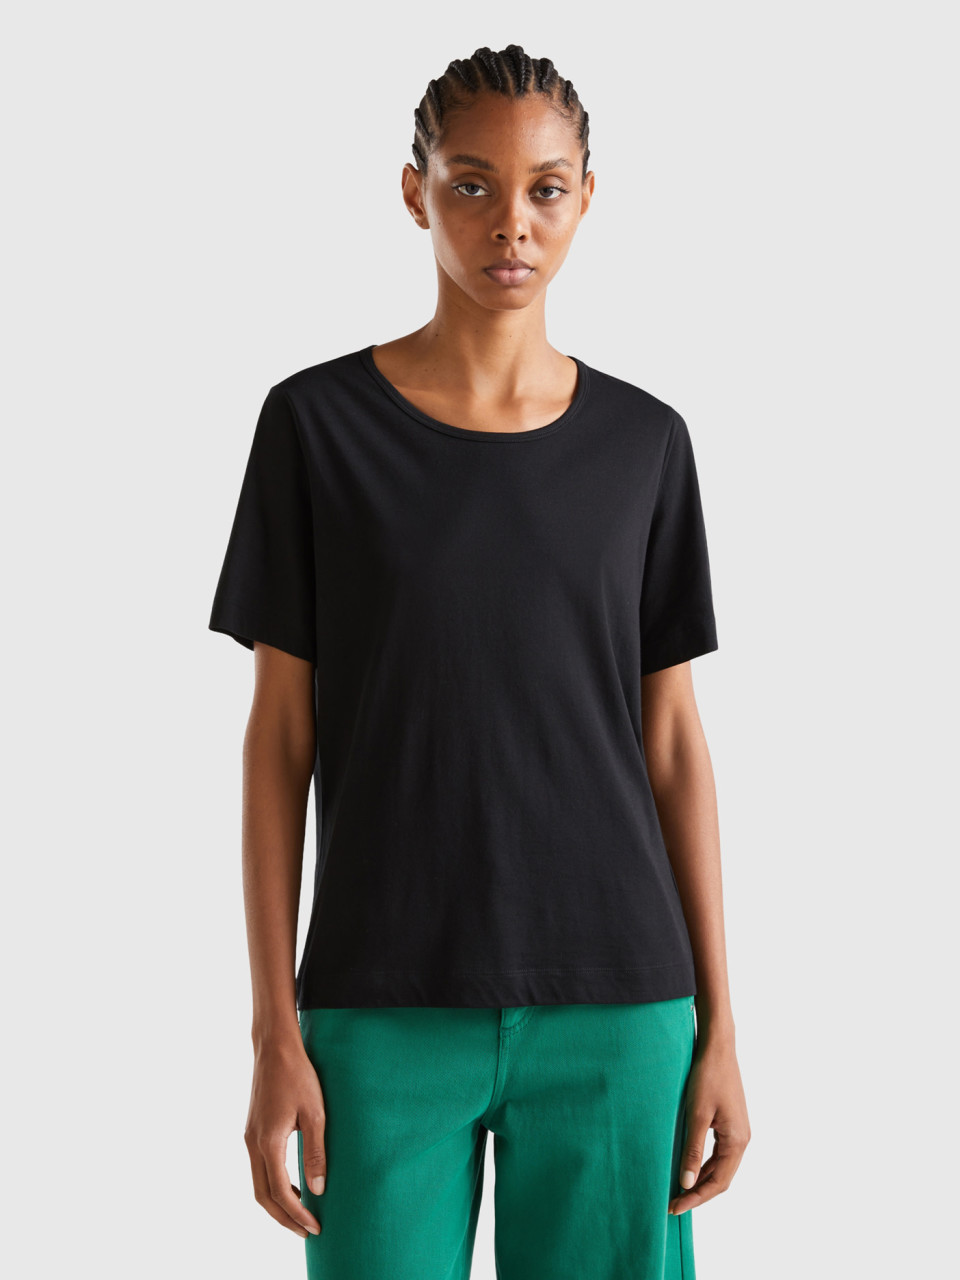 Benetton, Camiseta Negra De Manga Corta, Negro, Mujer